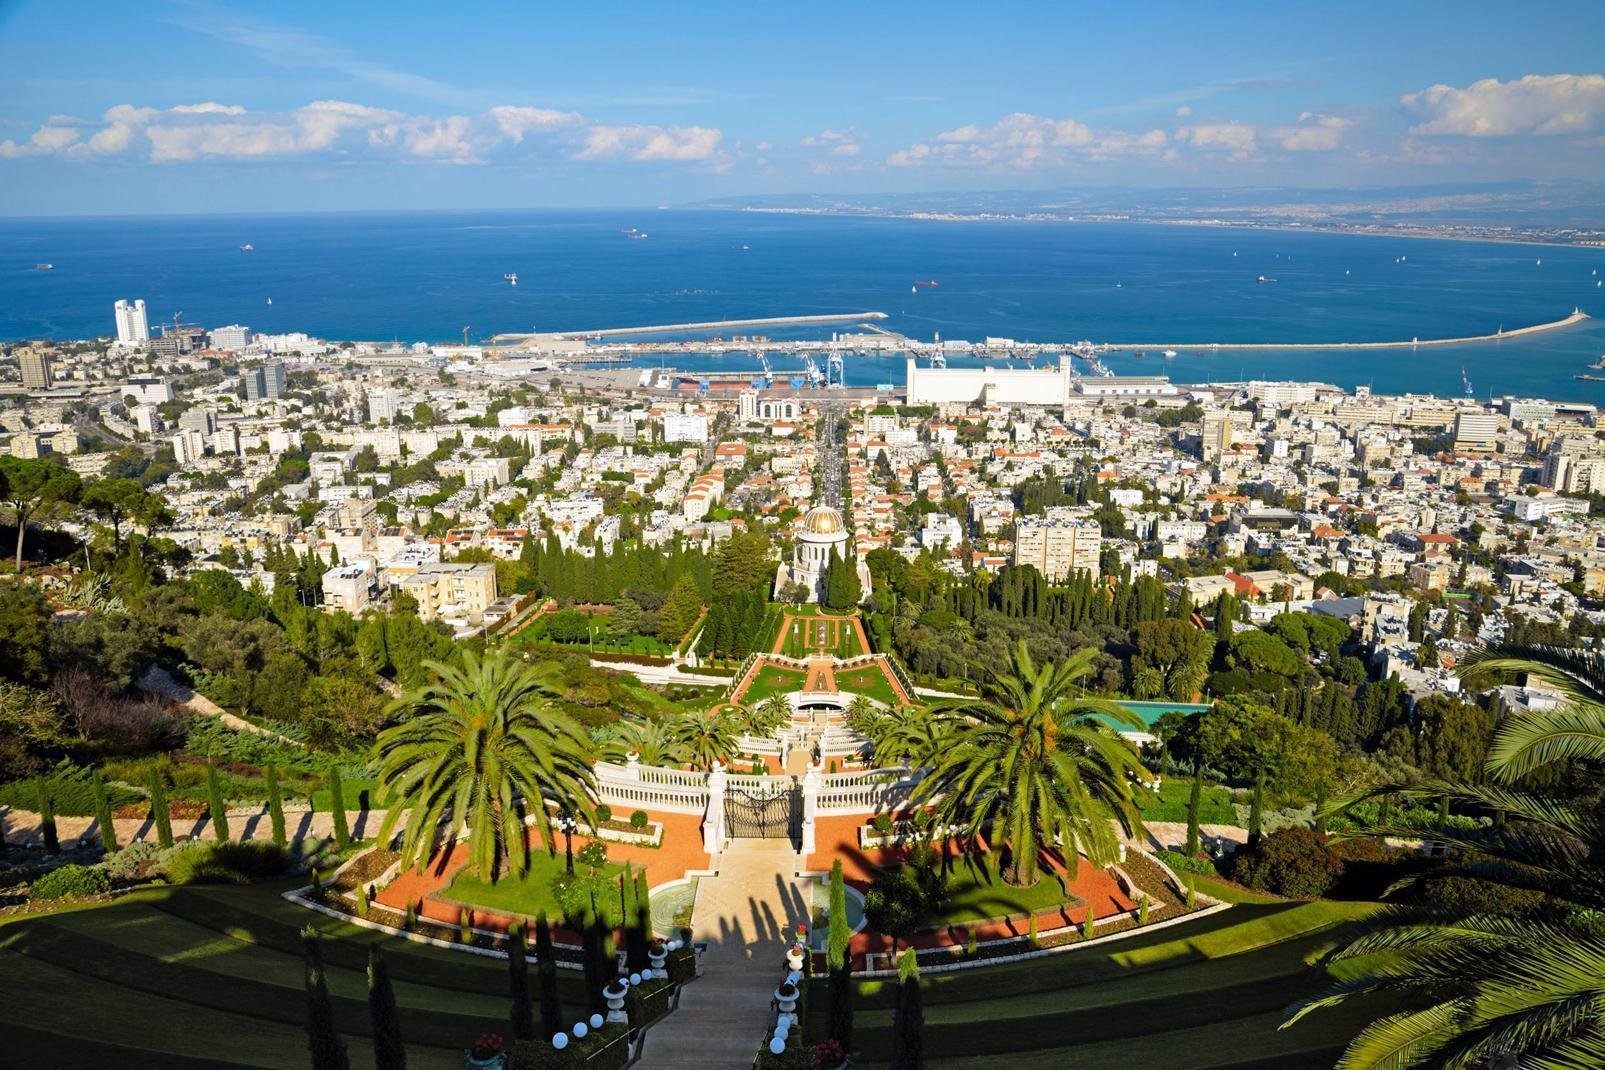 Haifa liegt am Hang des Karmelgebirges am Mittelmeerufer und ist die drittgrößte Stadt Israels sowie gleichzeitig die Industriehauptstadt des Nordens, wobei sich die Wirtschaftsaktivität Haifas hauptsächlich auf den Hafen konzentriert. Auch hier wurde die Geschichte im Laufe der verschiedenen Eroberungen der Stadt geschrieben. Alles begann mit dem Kreuzzug im Jahre 1100. 1156 gründete Richard Löwenherz ...